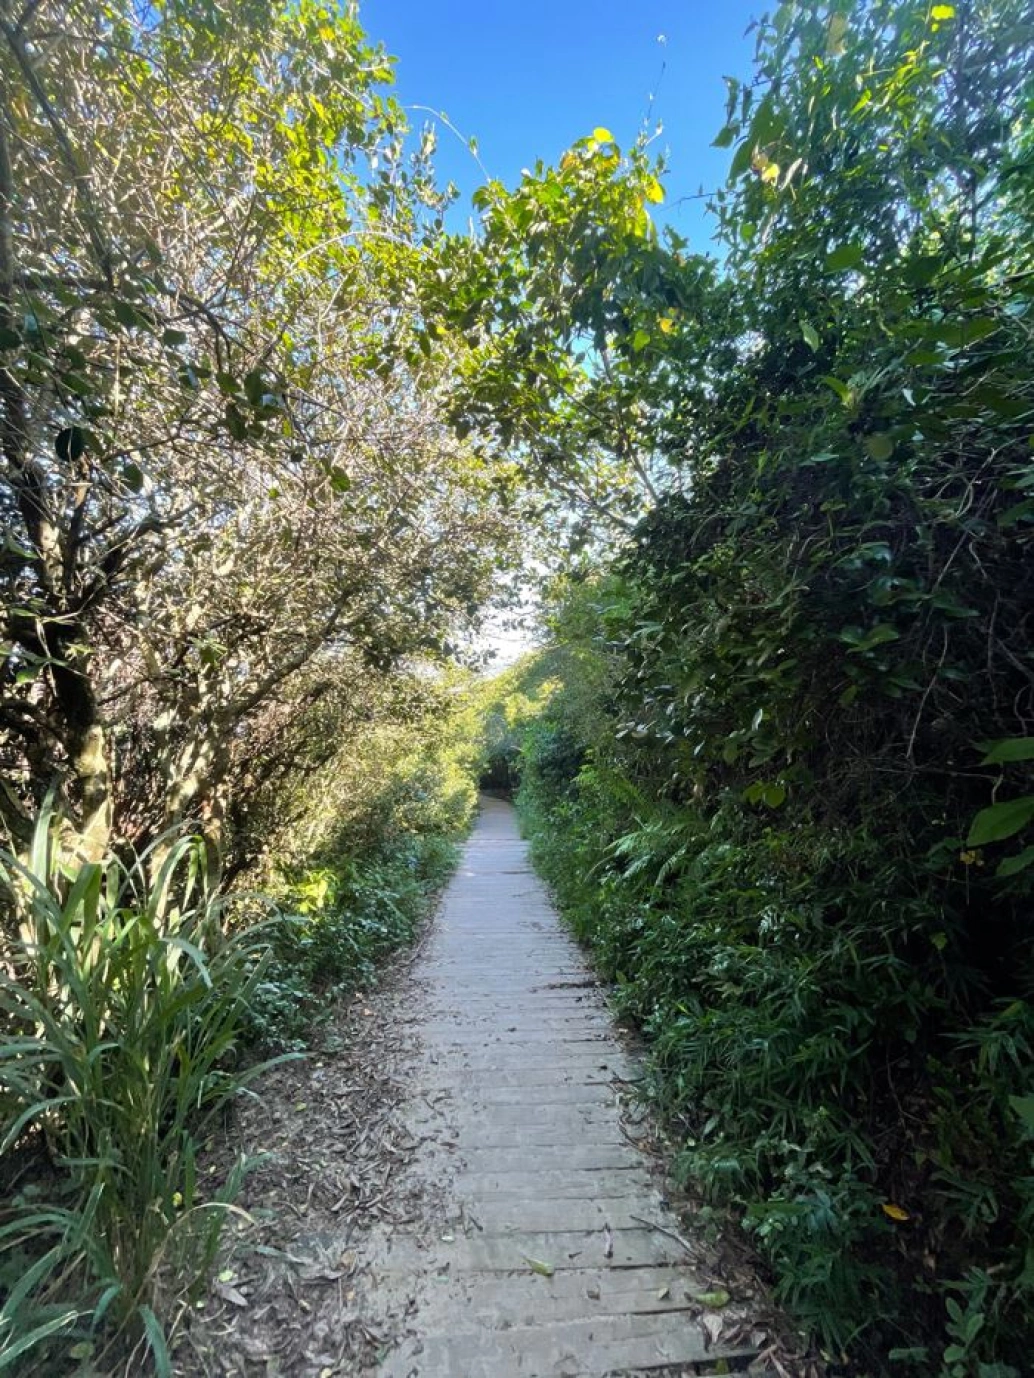 Uma trilha estreita calçada abre caminho em meio à vegetação densa.